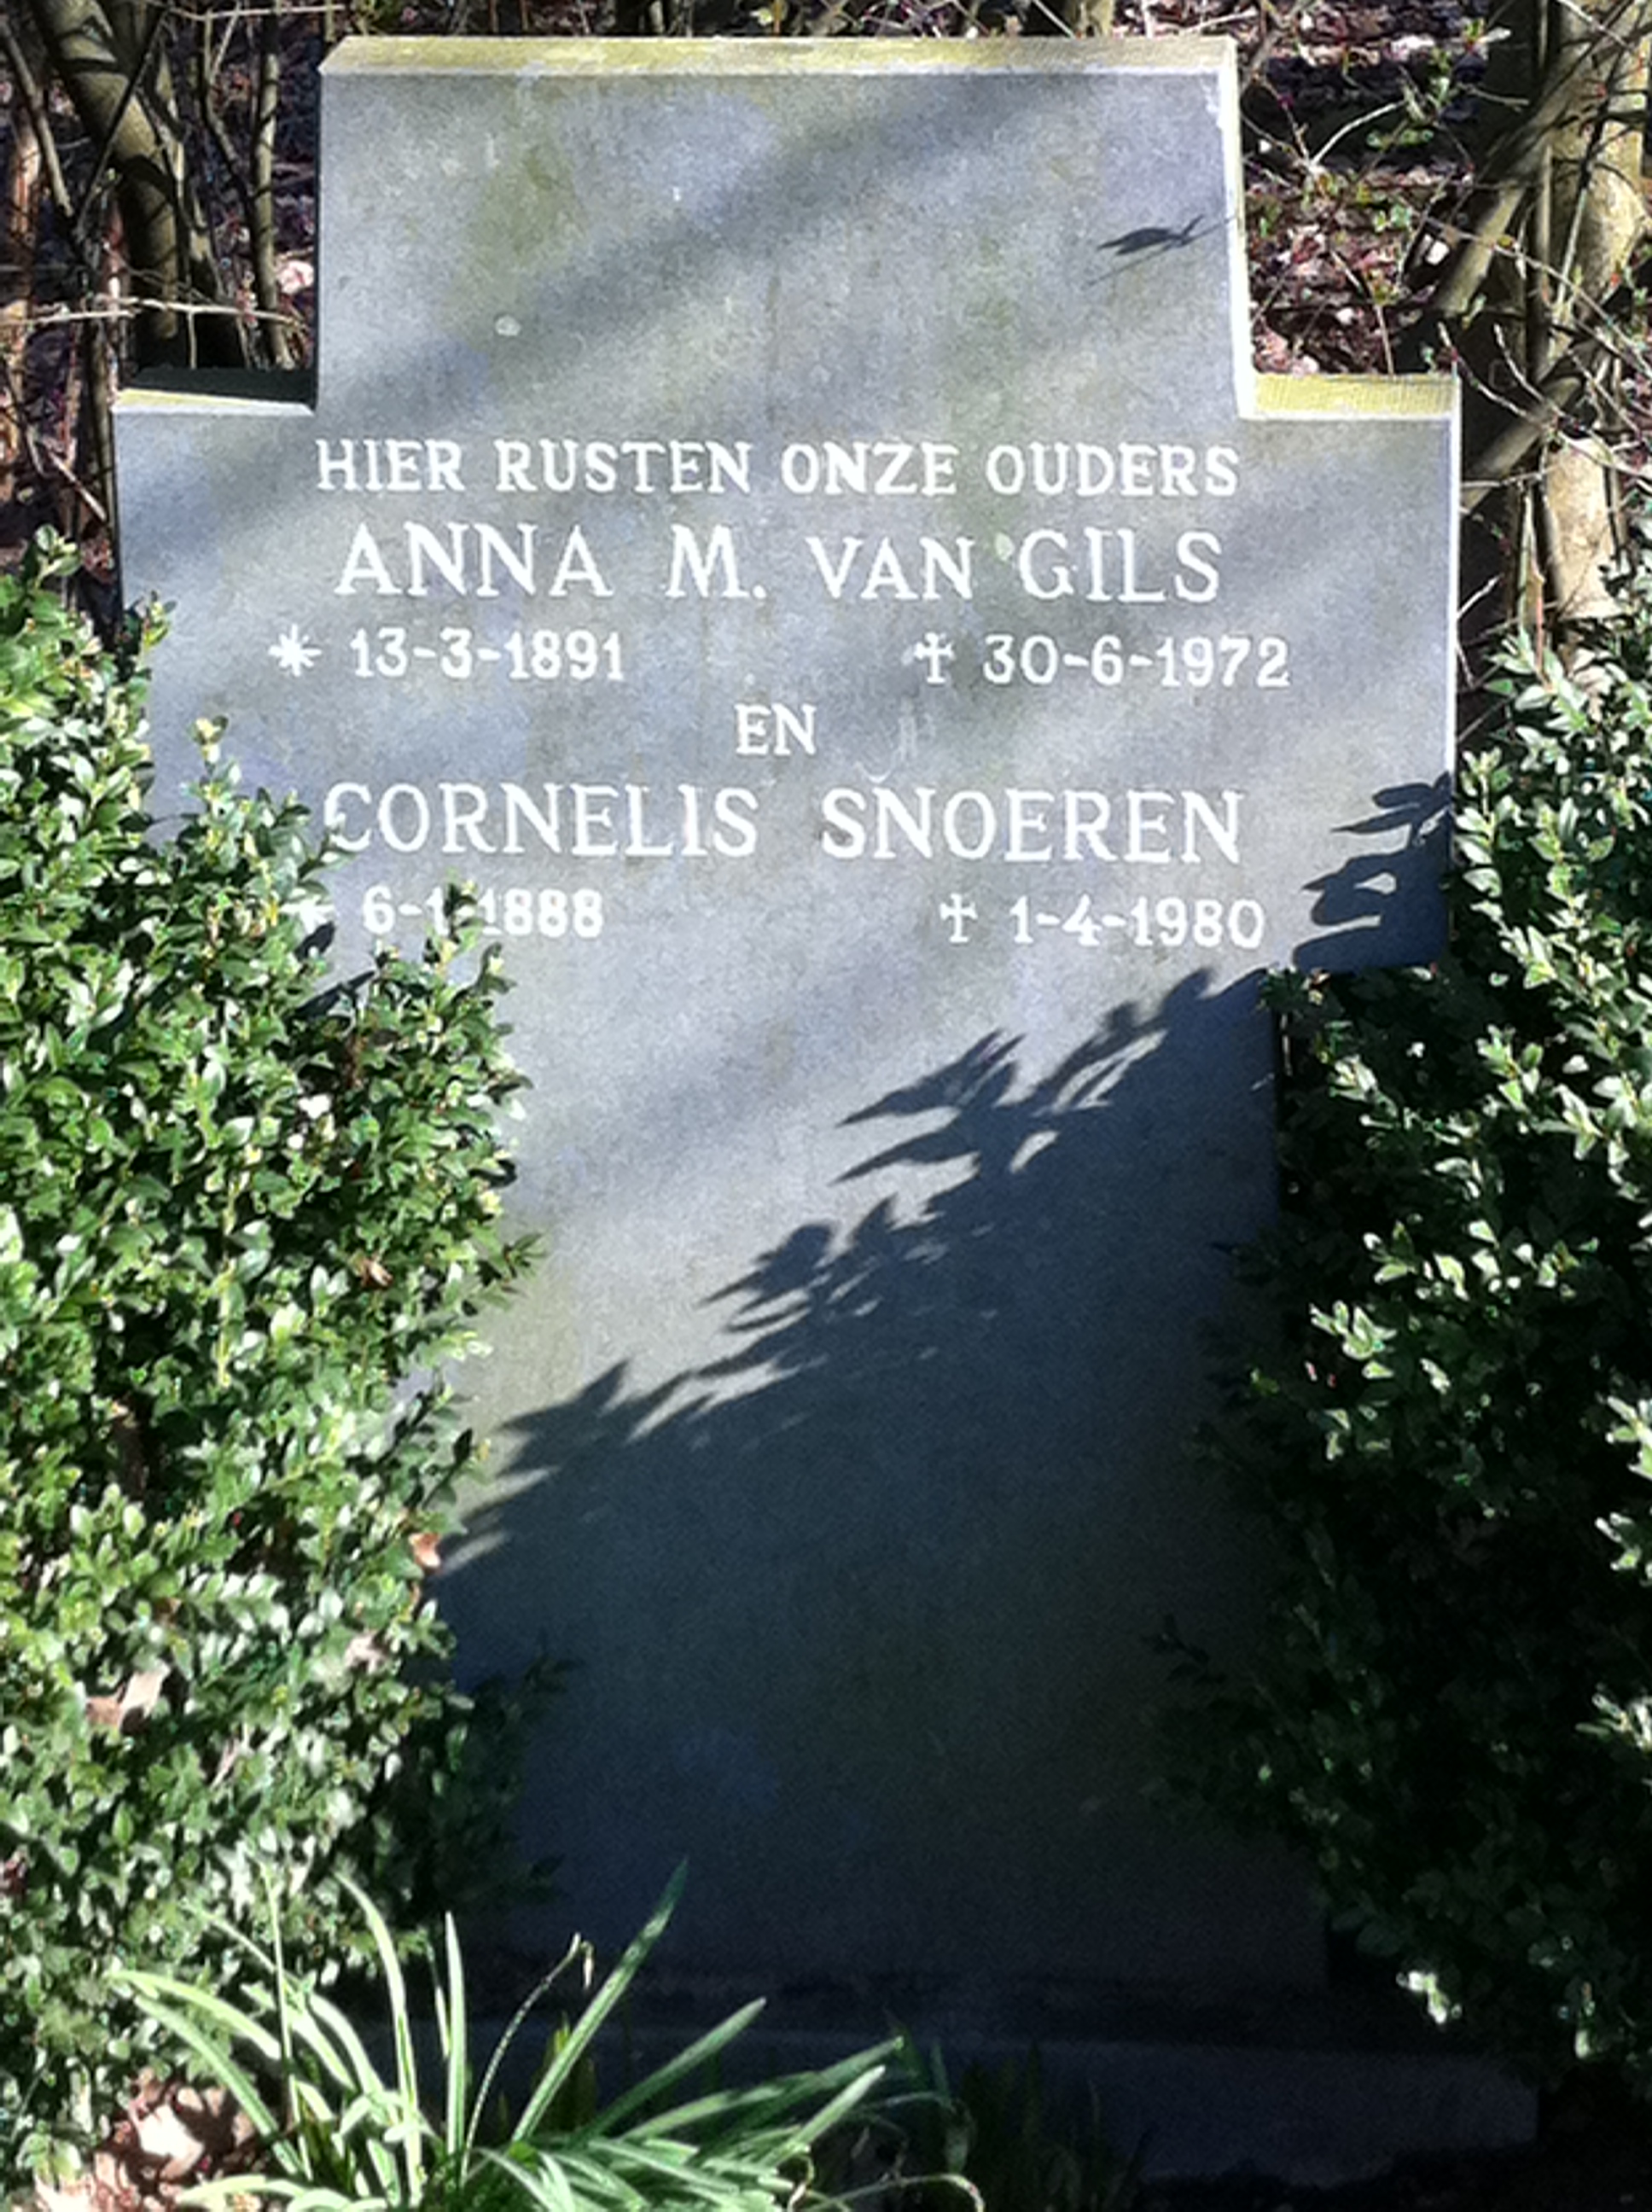 snoeren_cornelis_en_ant_van_gils_op_begraafplaats_dongen.jpg